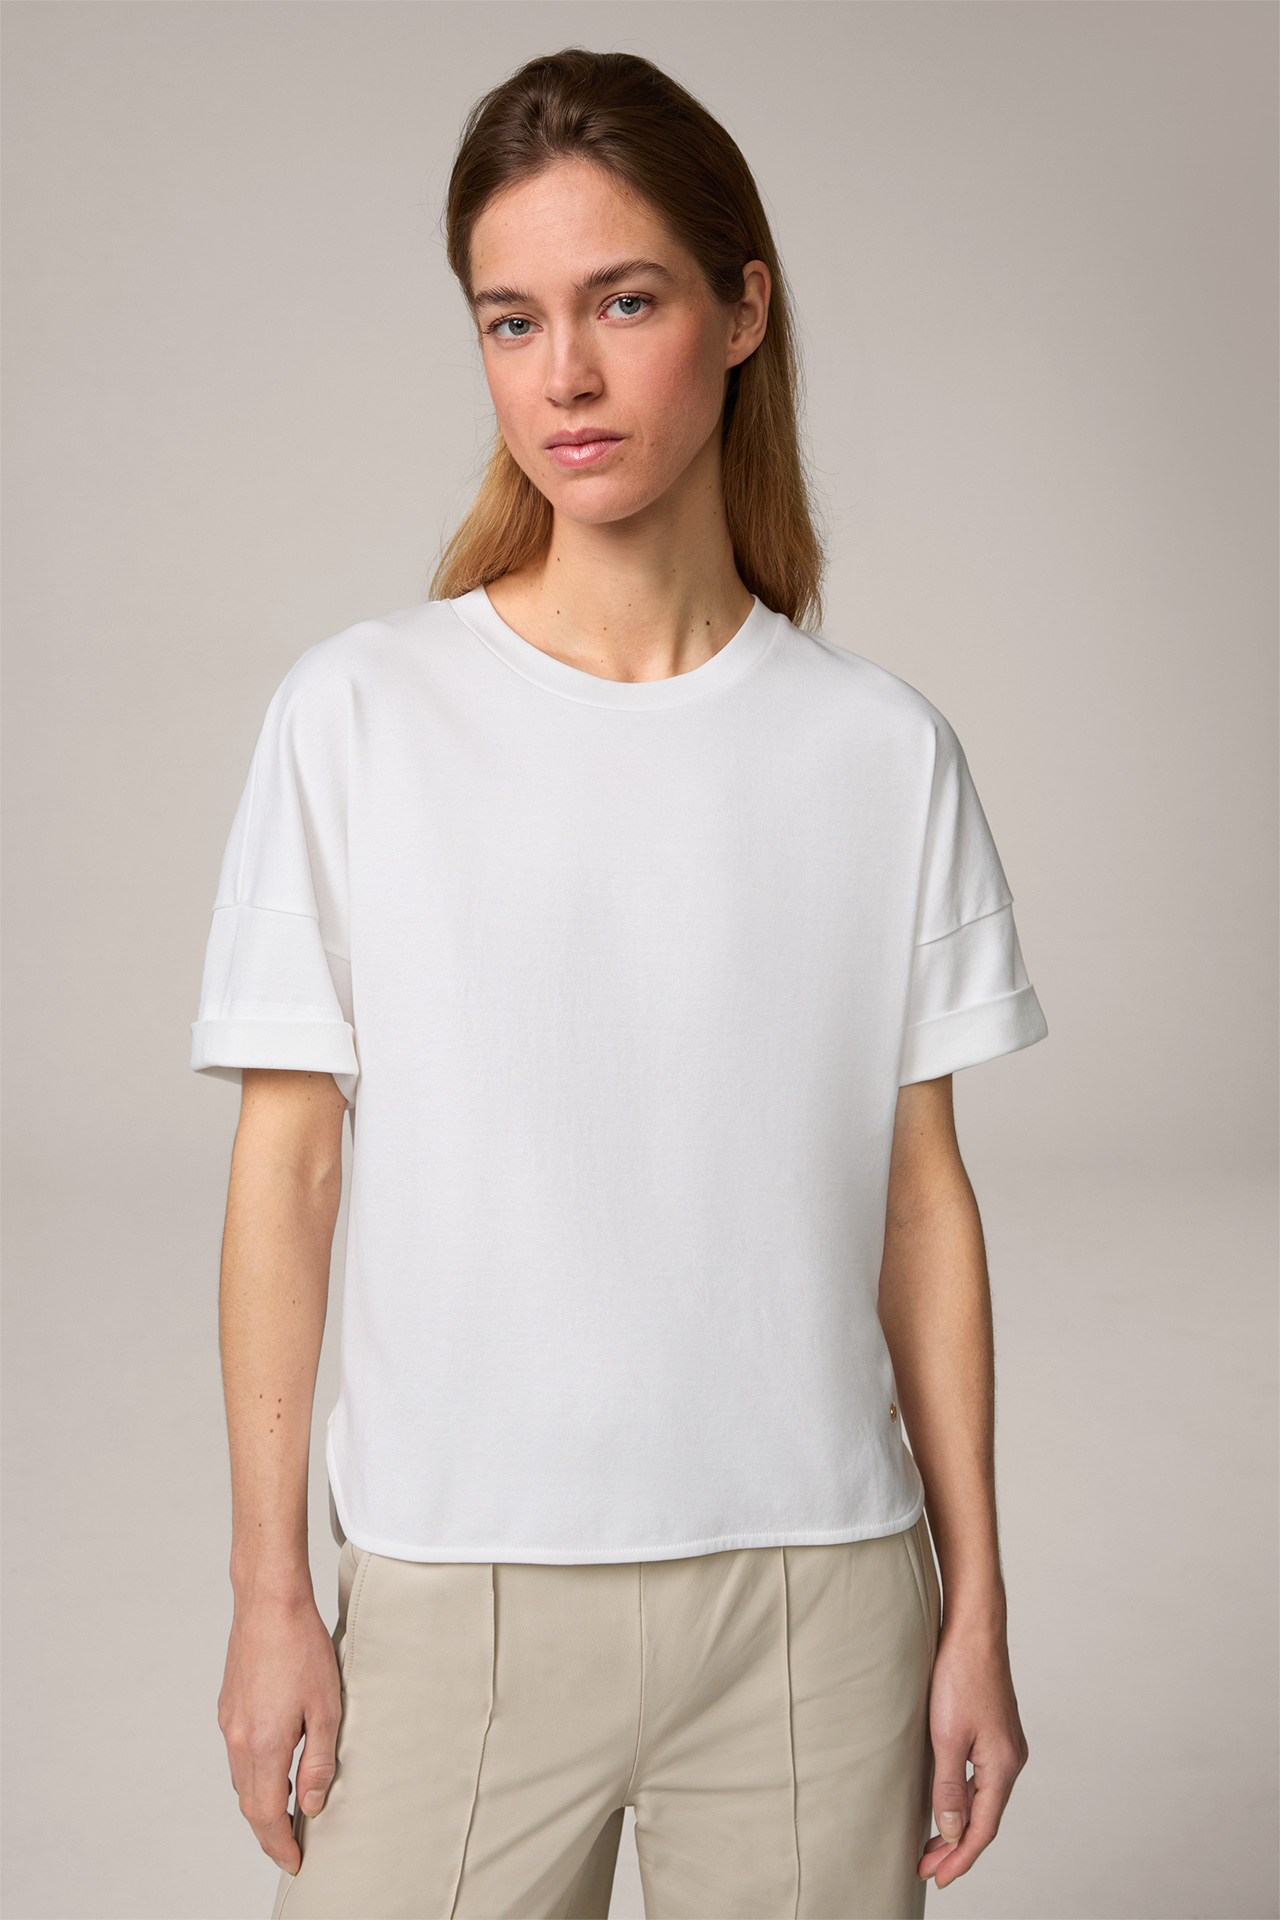  Cotton Interlock Half-Sleeved Shirt in White